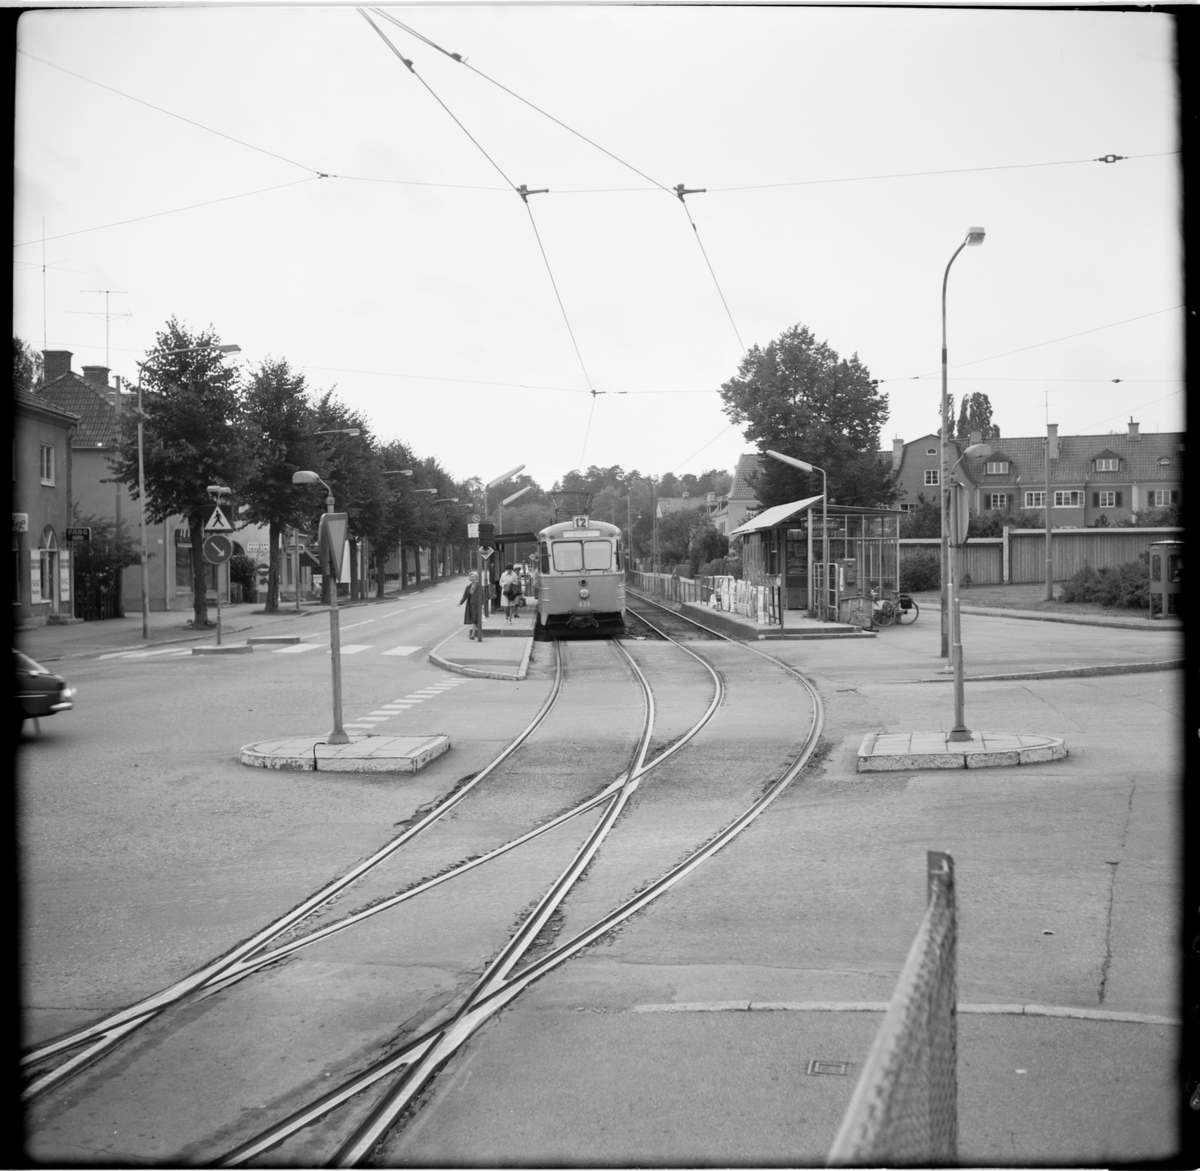 Aktiebolaget Stockholms Spårvägar, SS B24 635 "ängbyvagn" linje 12 Alvik vid Allèparkens hållplats mot söder.